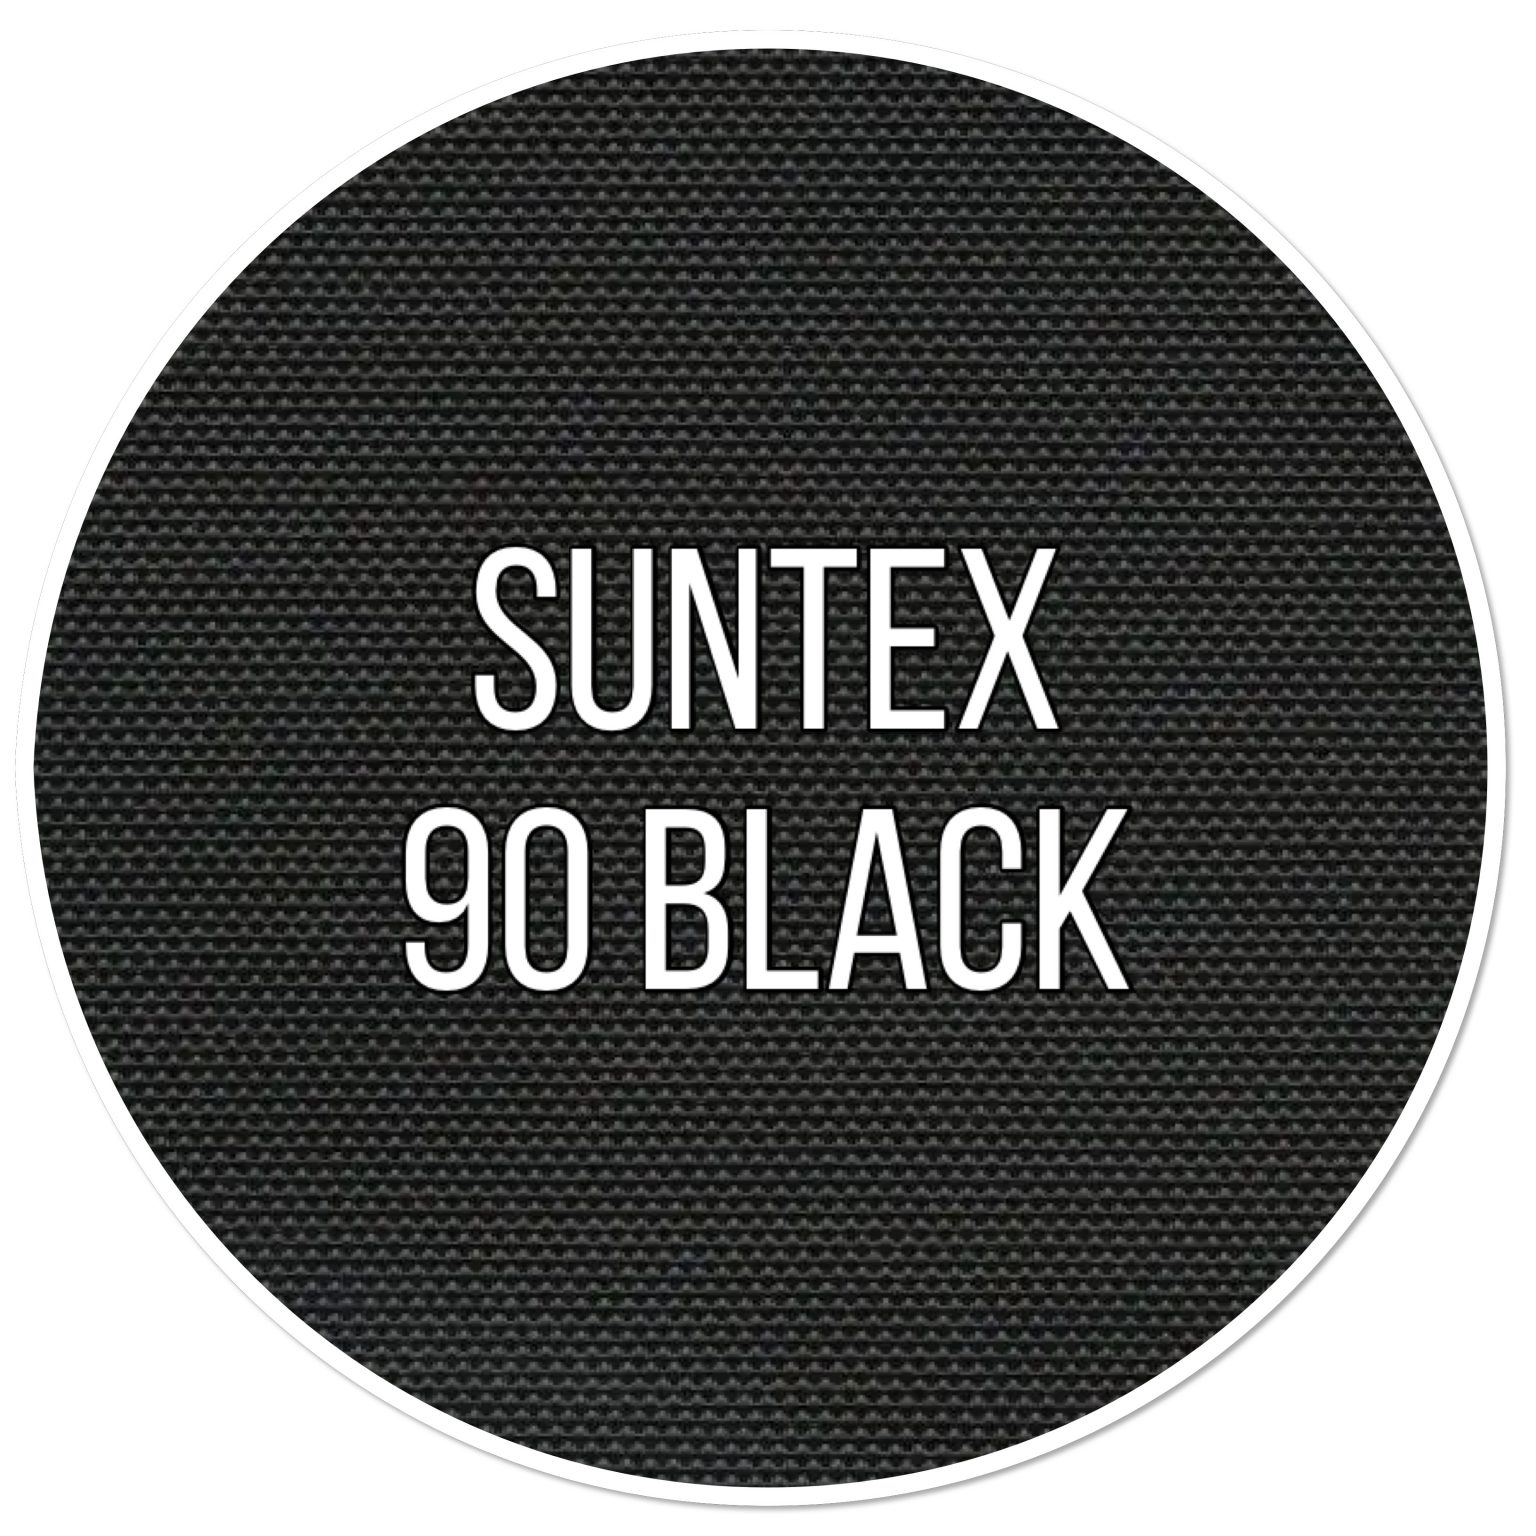 suntex 90 black